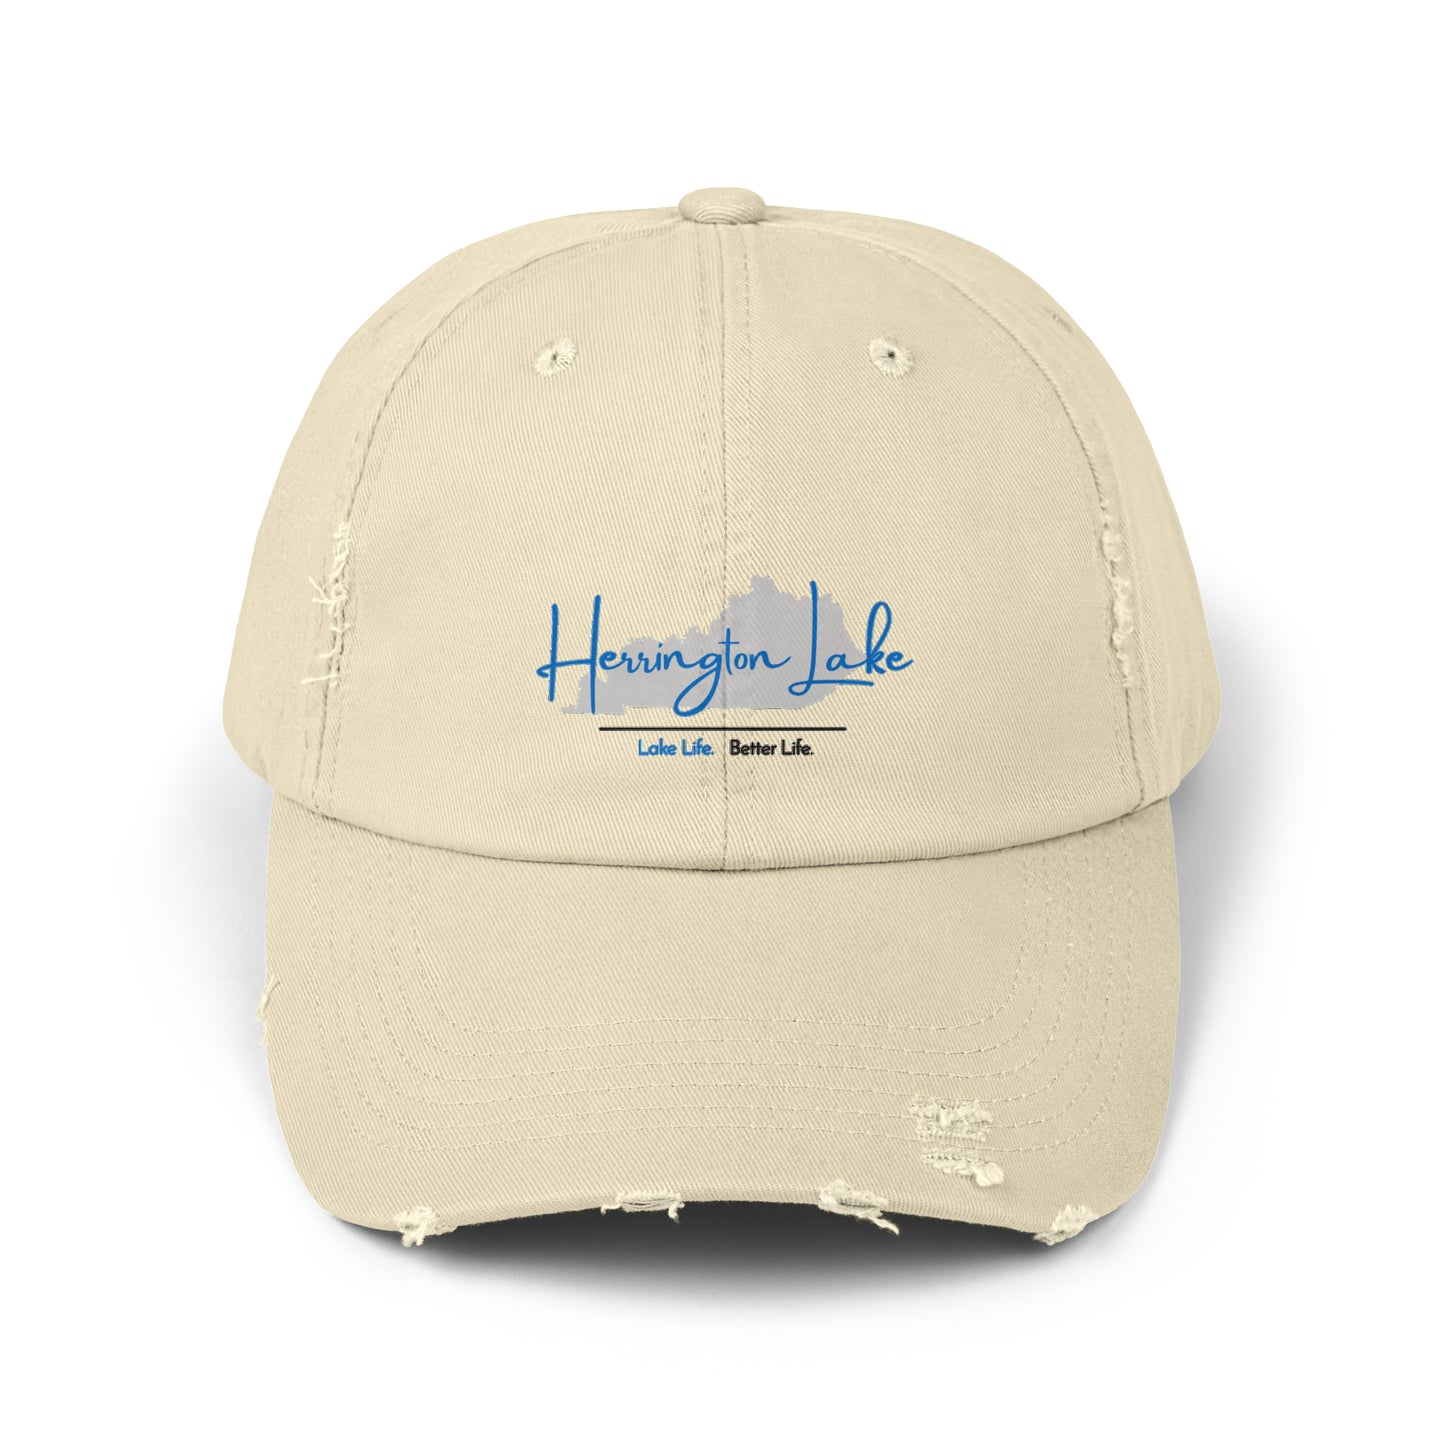 Herrington Lake Signature Collection Distressed Cap